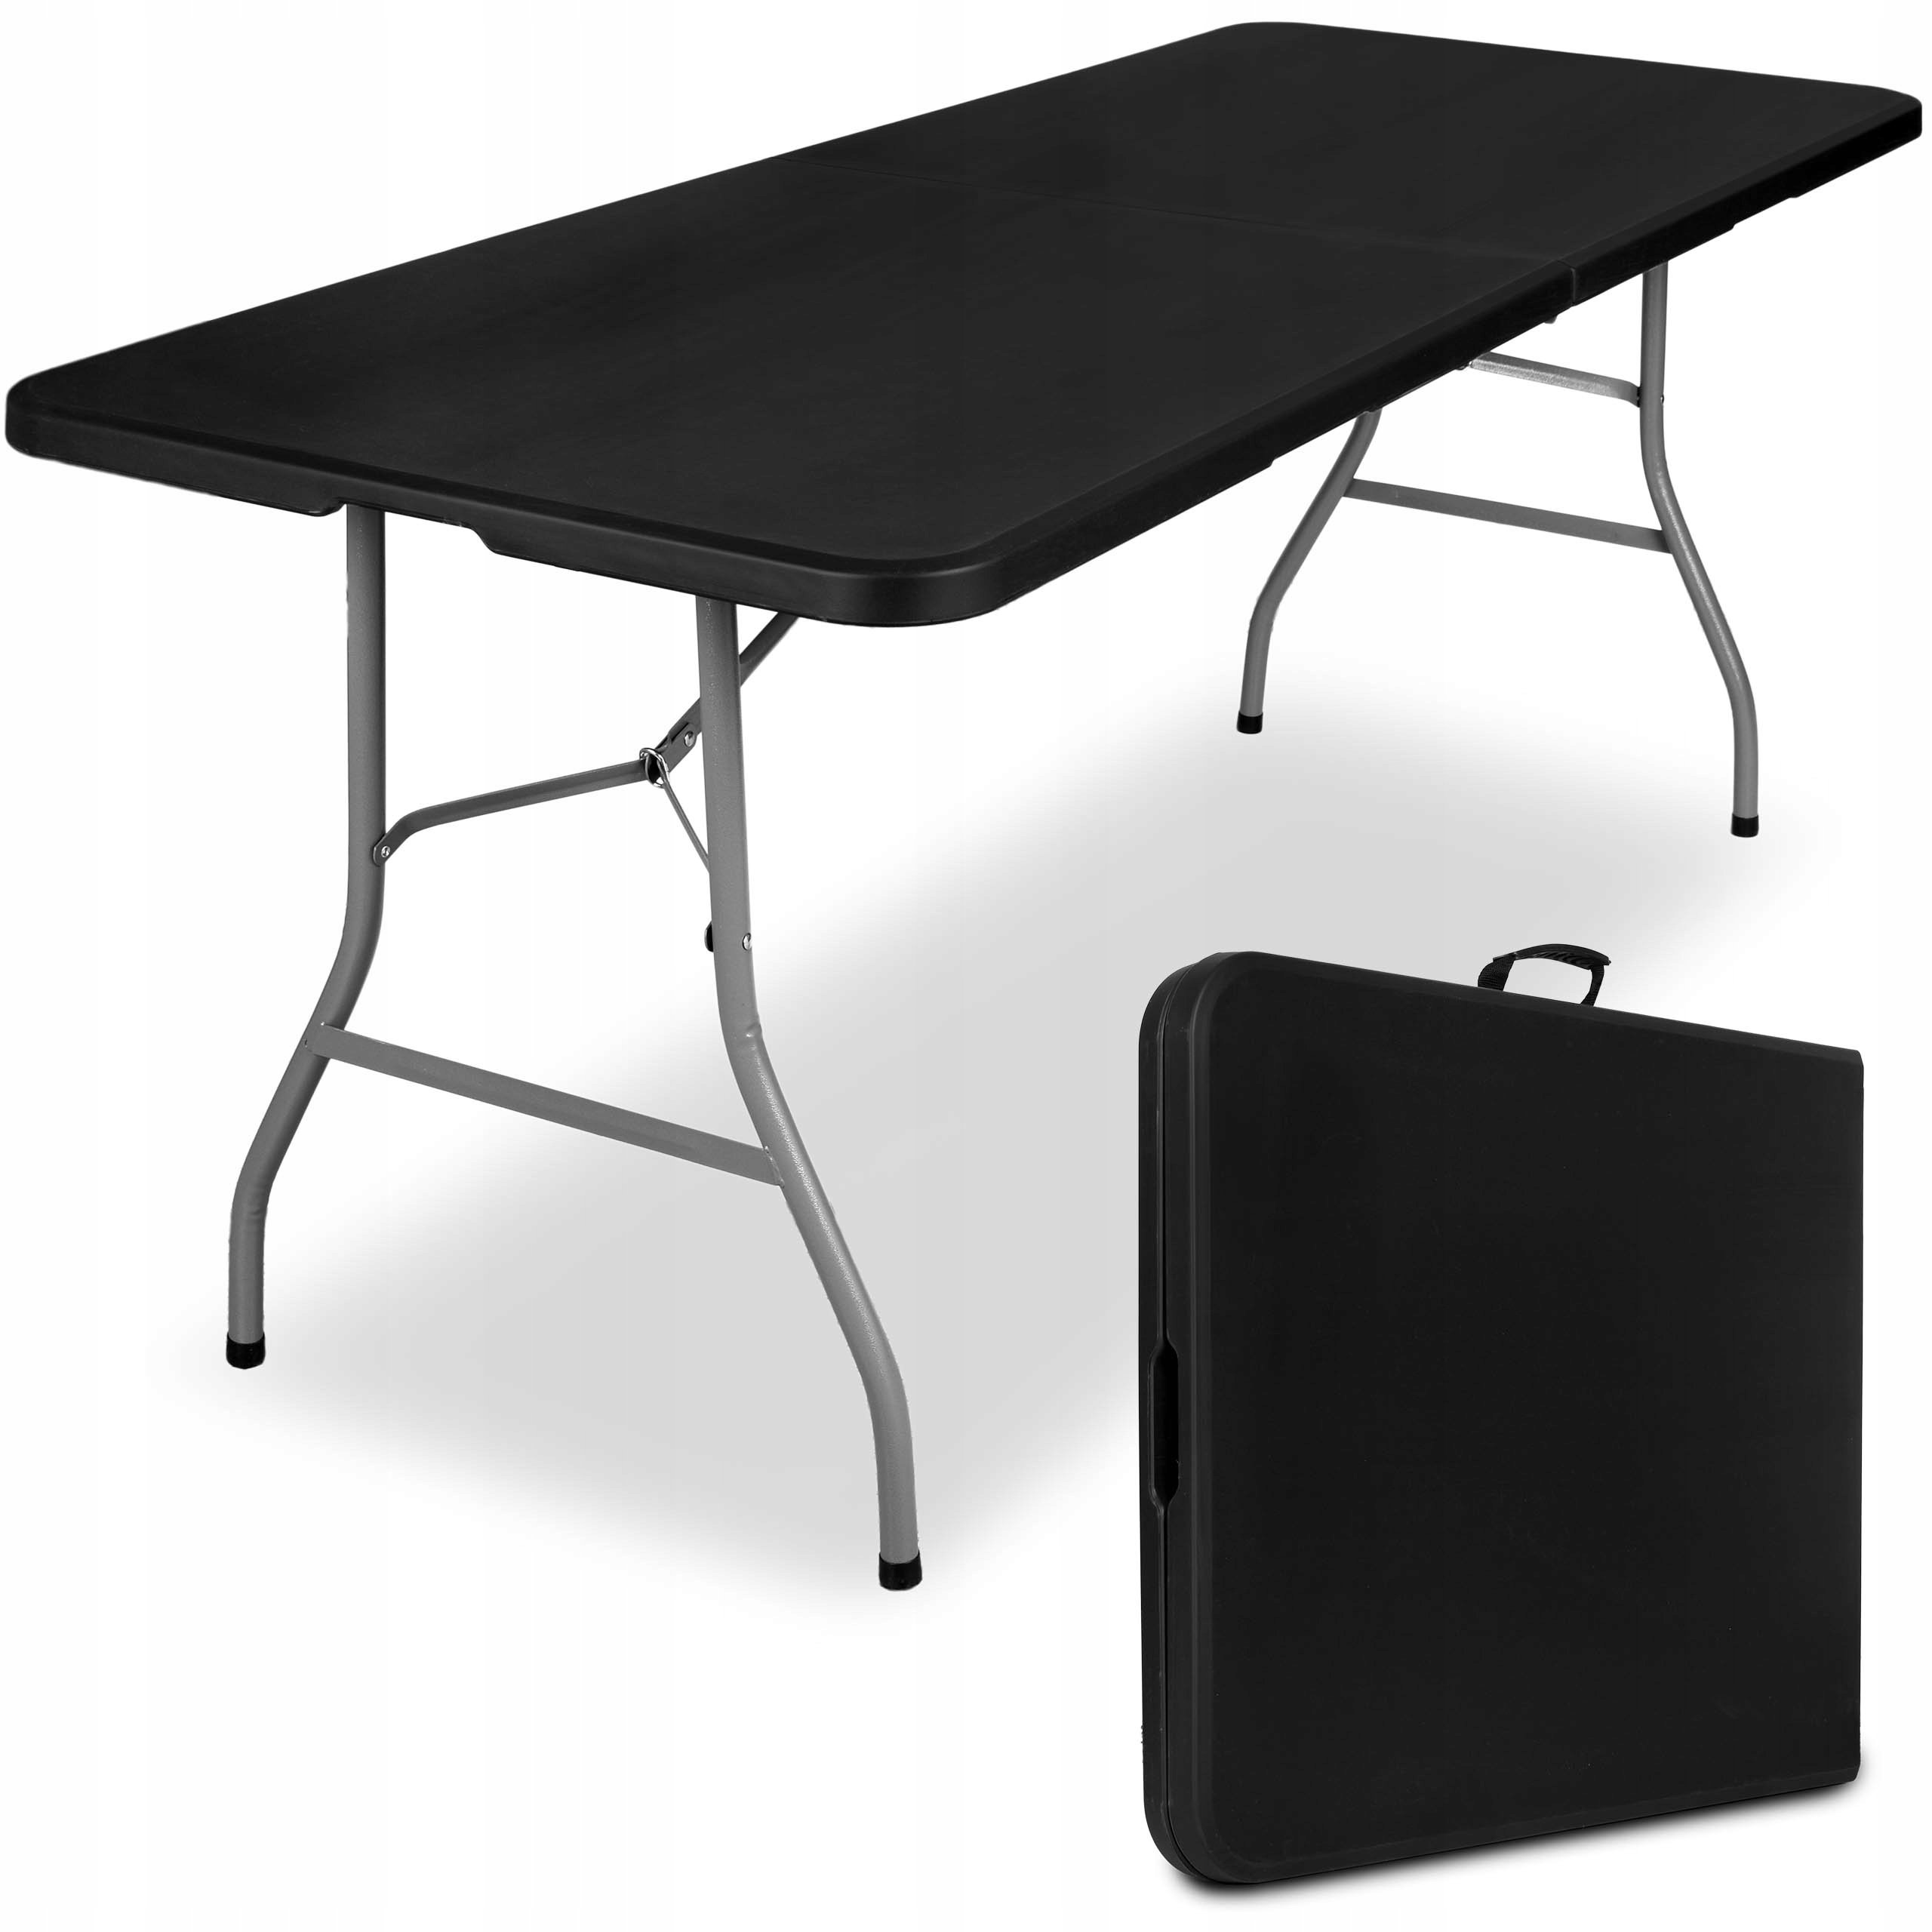 Plastikinis sulankstomas stalas Feta, juodas, 180x74cm kaina | pigu.lt